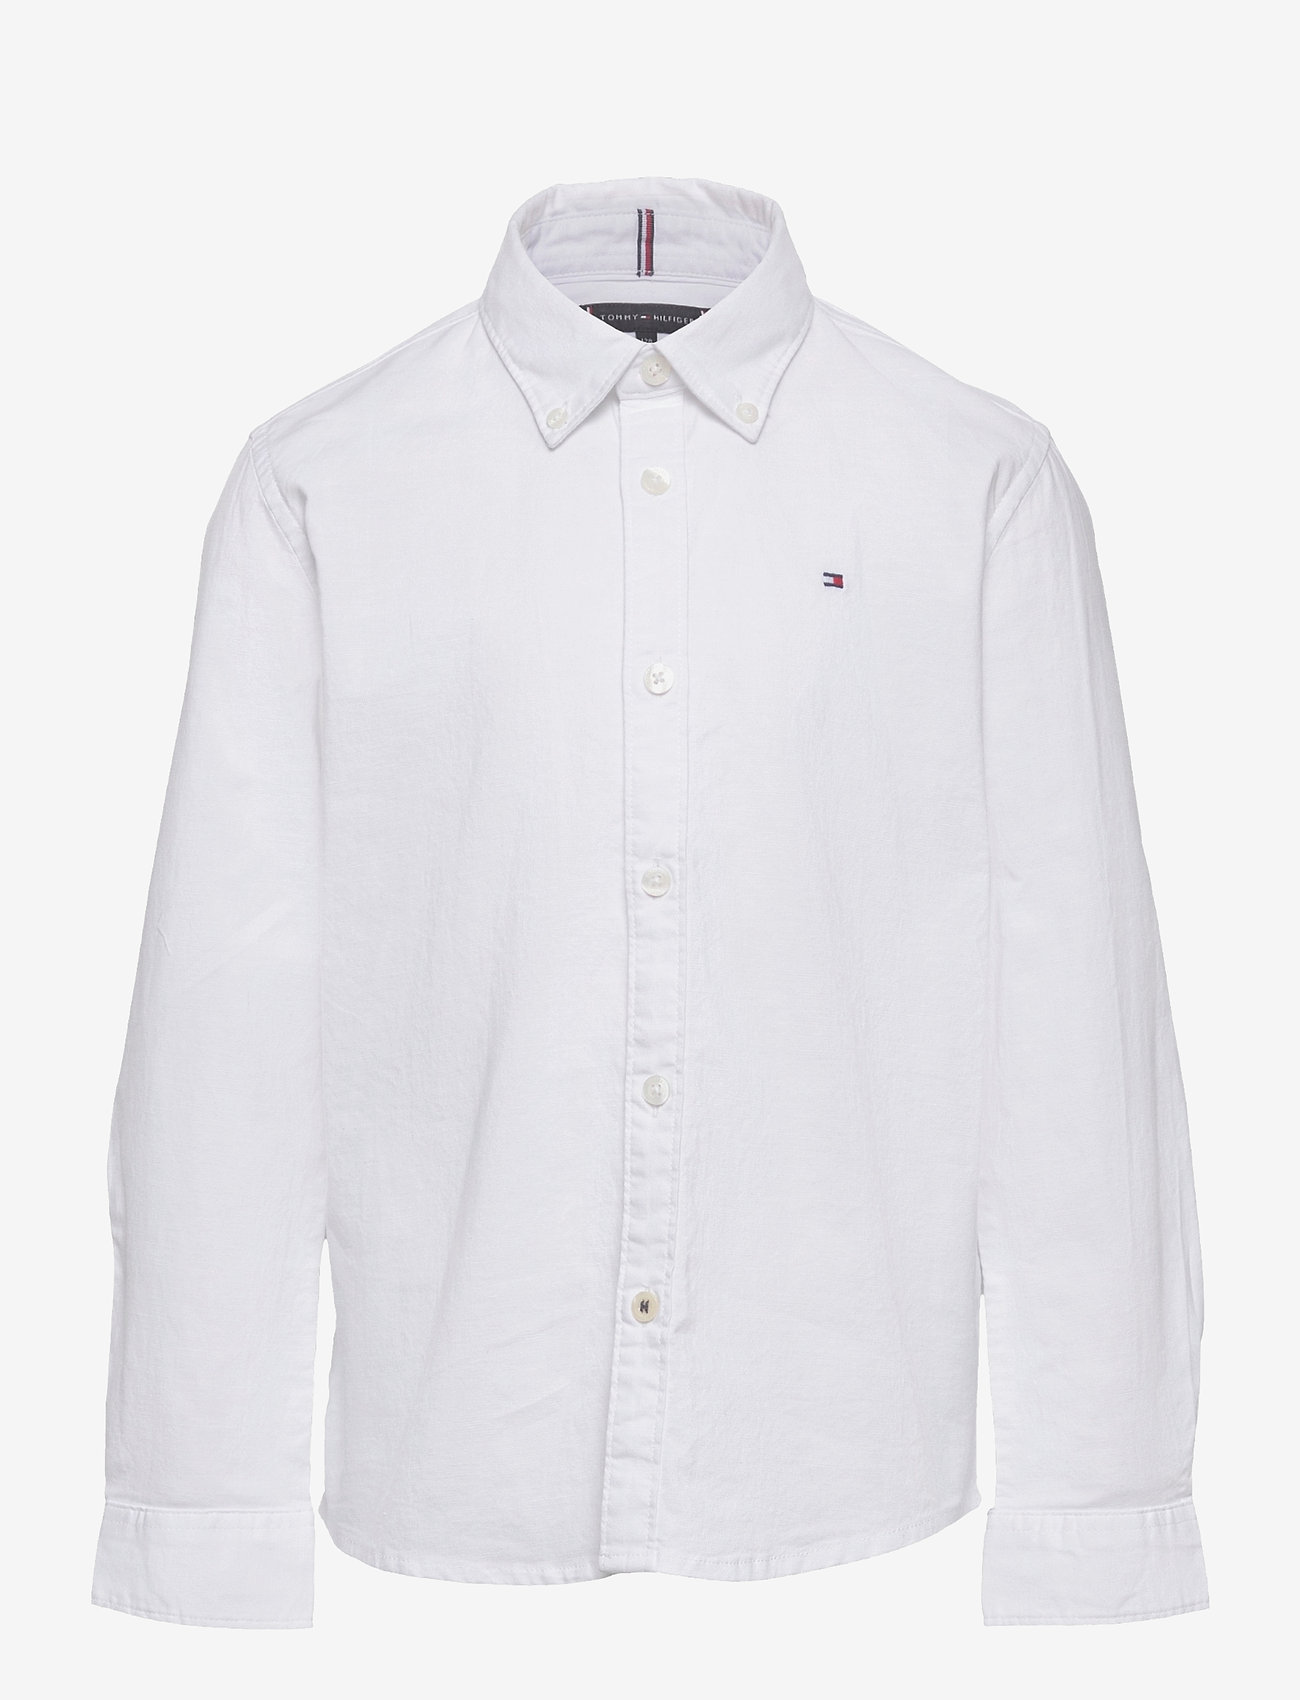 Tommy Hilfiger - BOYS STRETCH OXFORD SHIRT L/S - koszule z długimi rękawami - white - 1